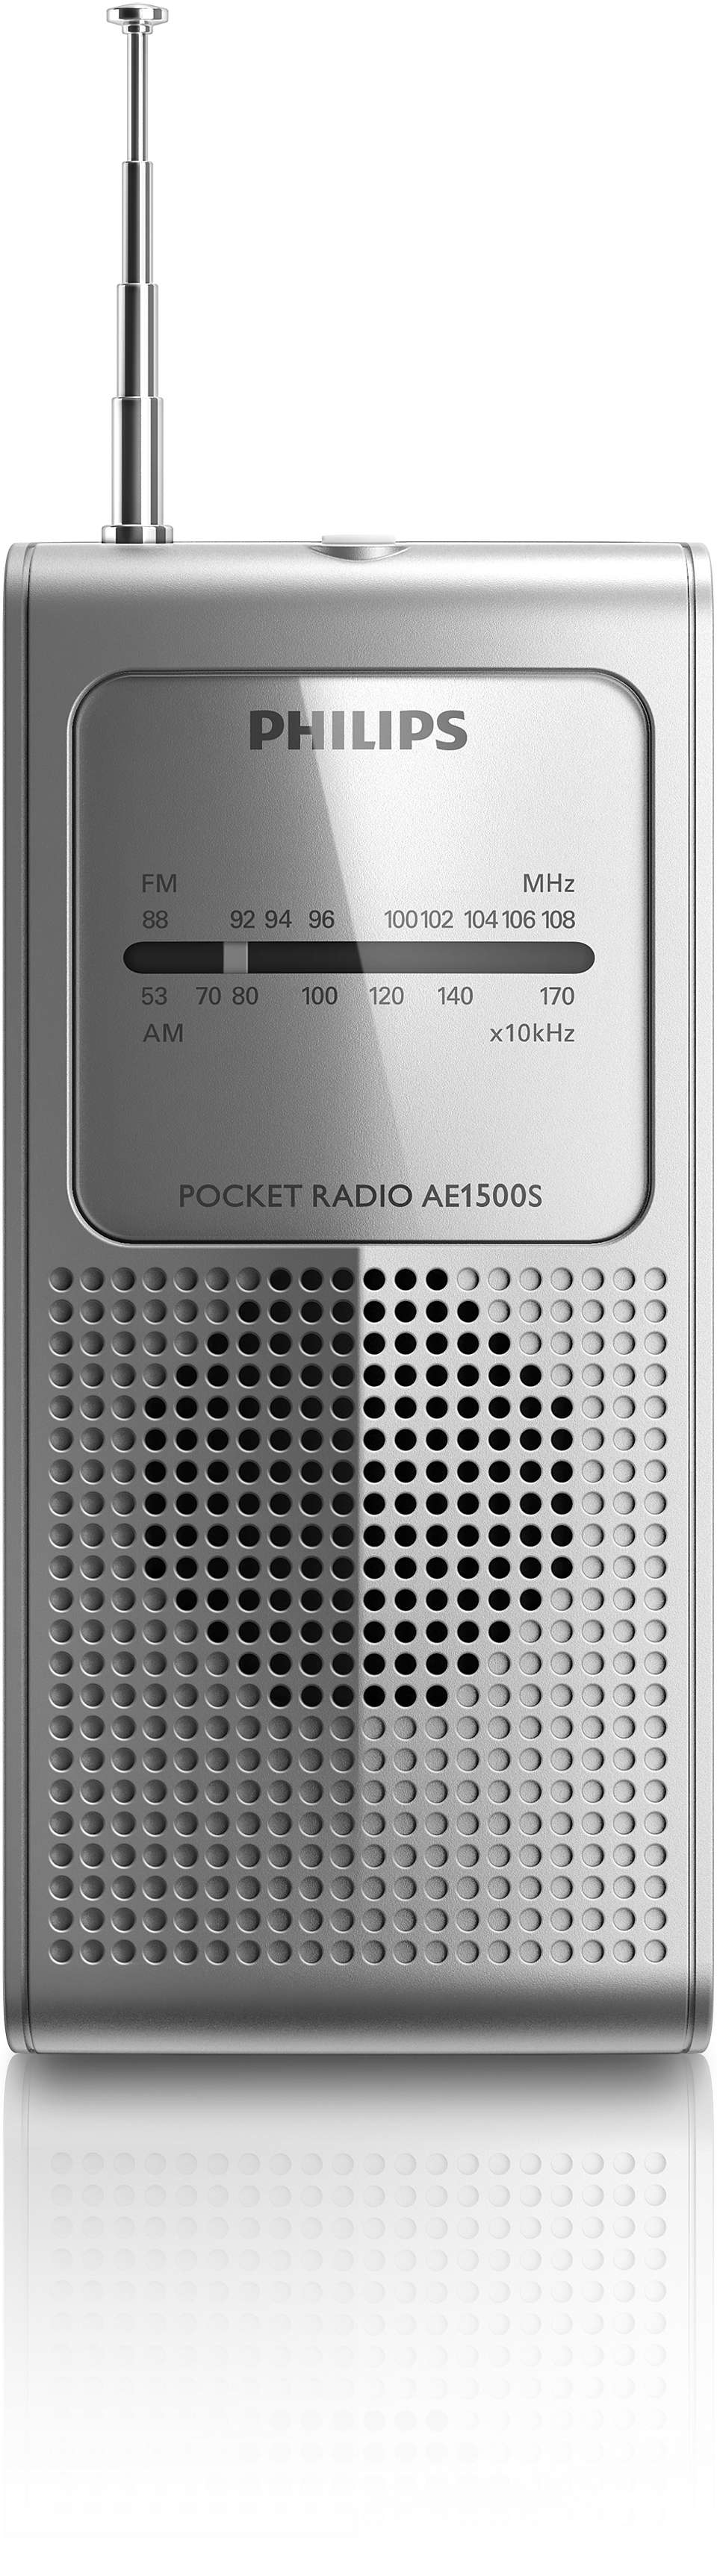 Radio de poche